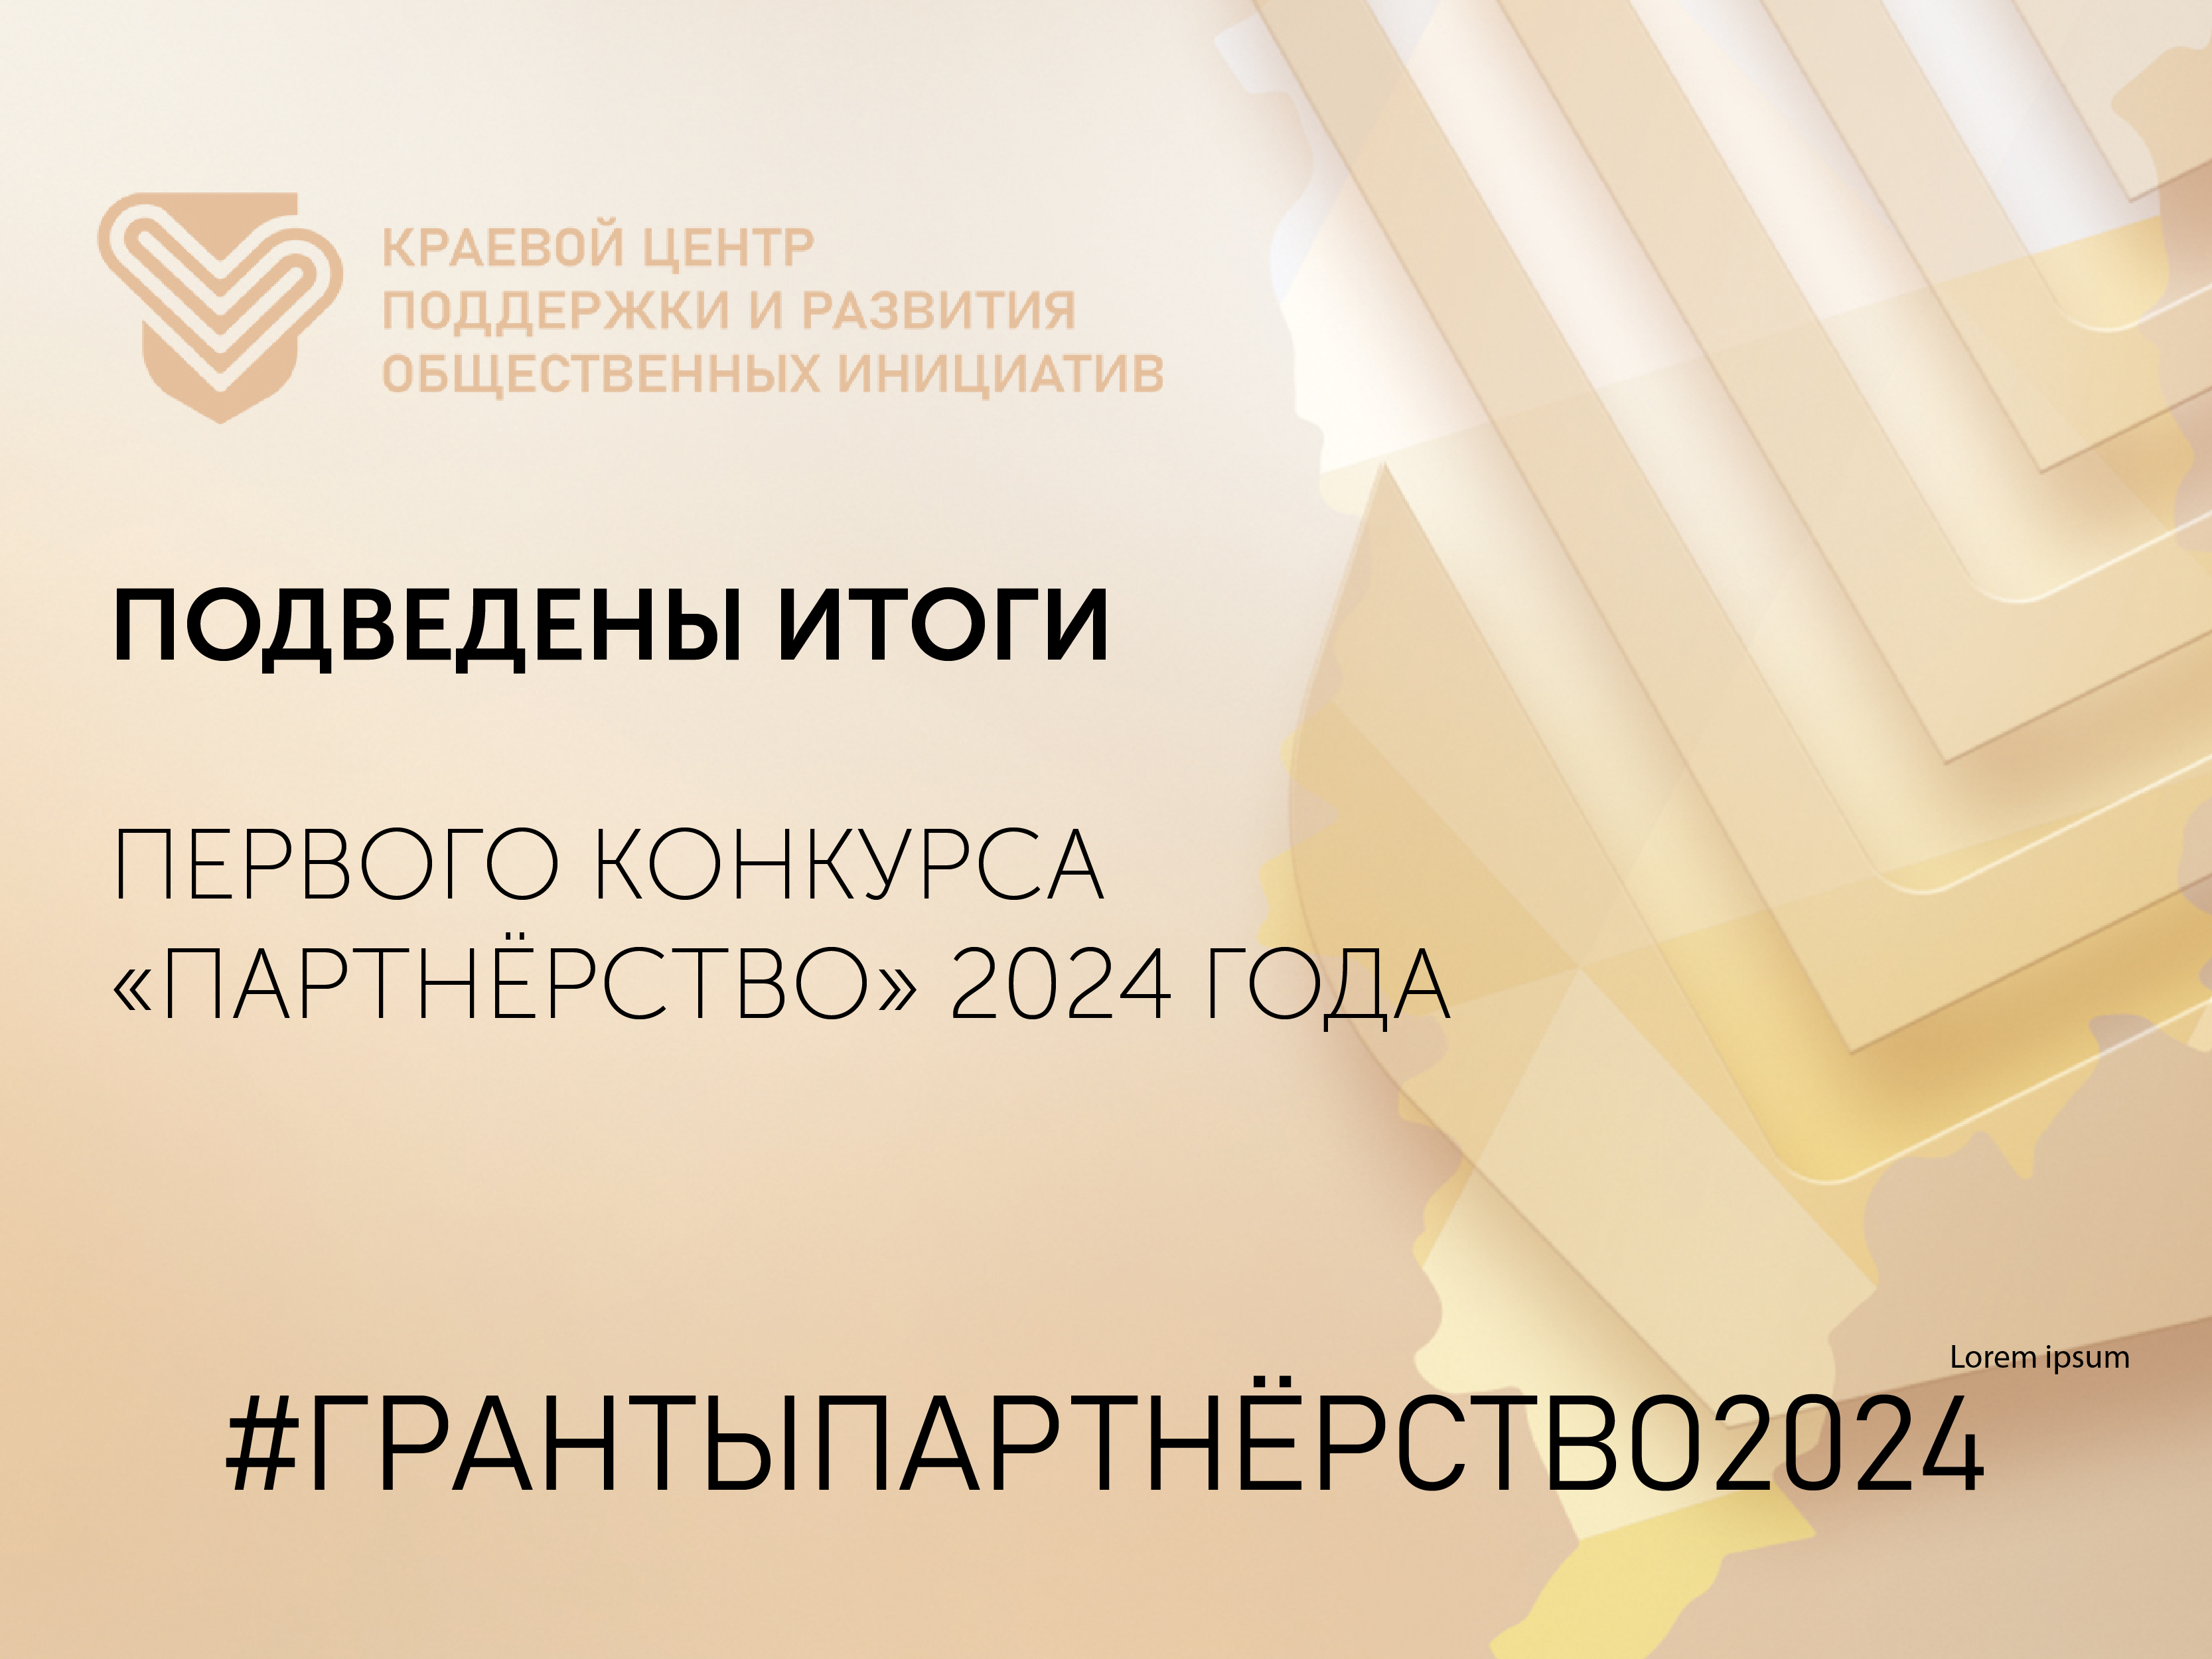 Итоги 1 конкурса грантовой программы Красноярского края «Партнерство» 2024 года